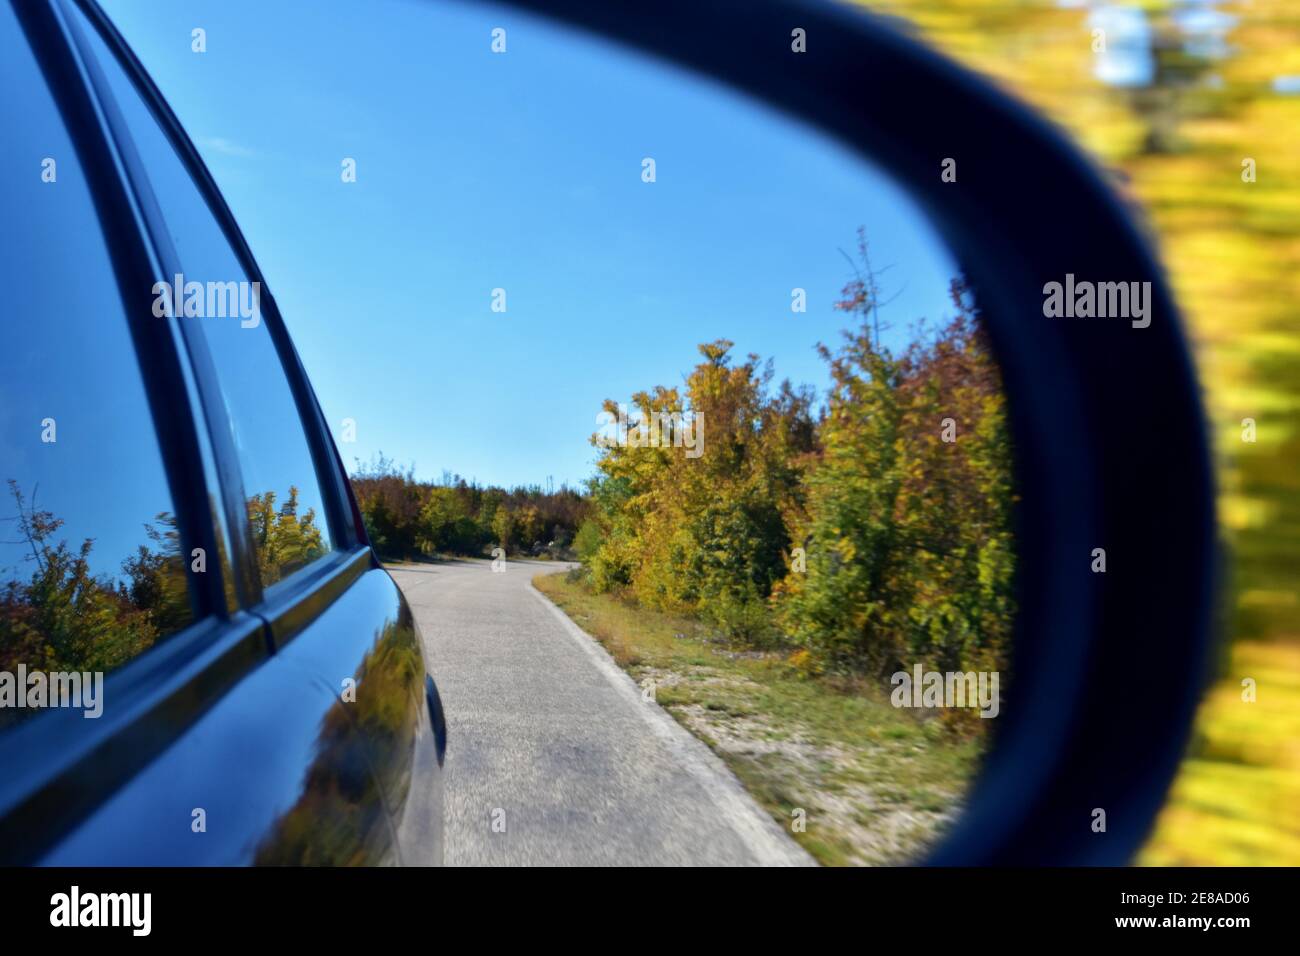 Blick auf den Außenspiegel des Autos, der Spiegel reflektiert